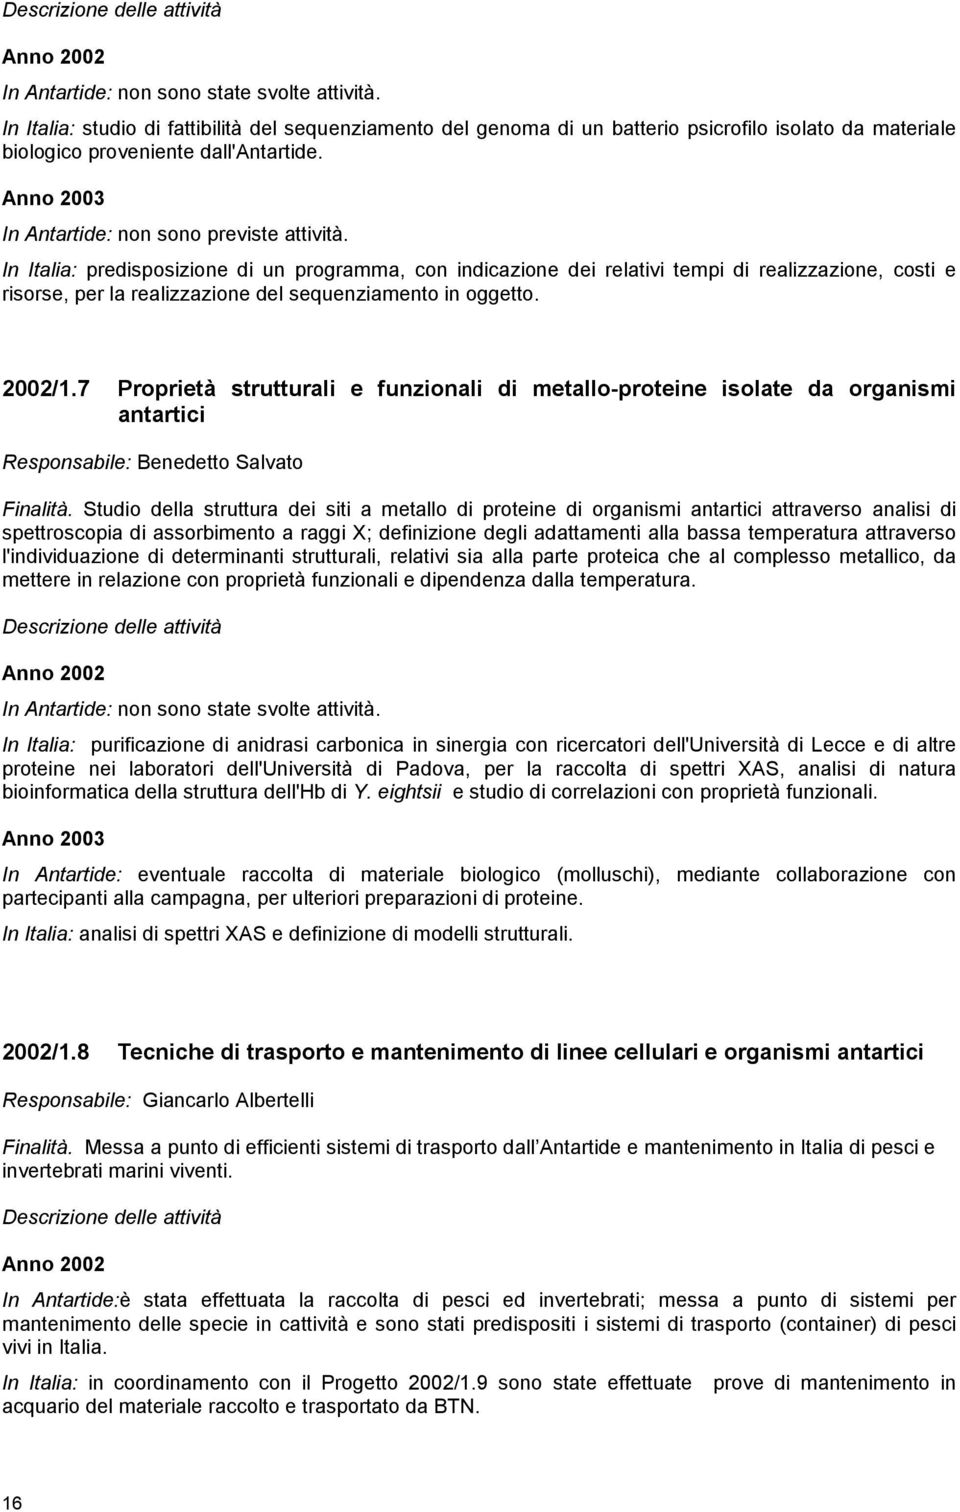 In Italia: predisposizione di un programma, con indicazione dei relativi tempi di realizzazione, costi e risorse, per la realizzazione del sequenziamento in oggetto. 2002/1.